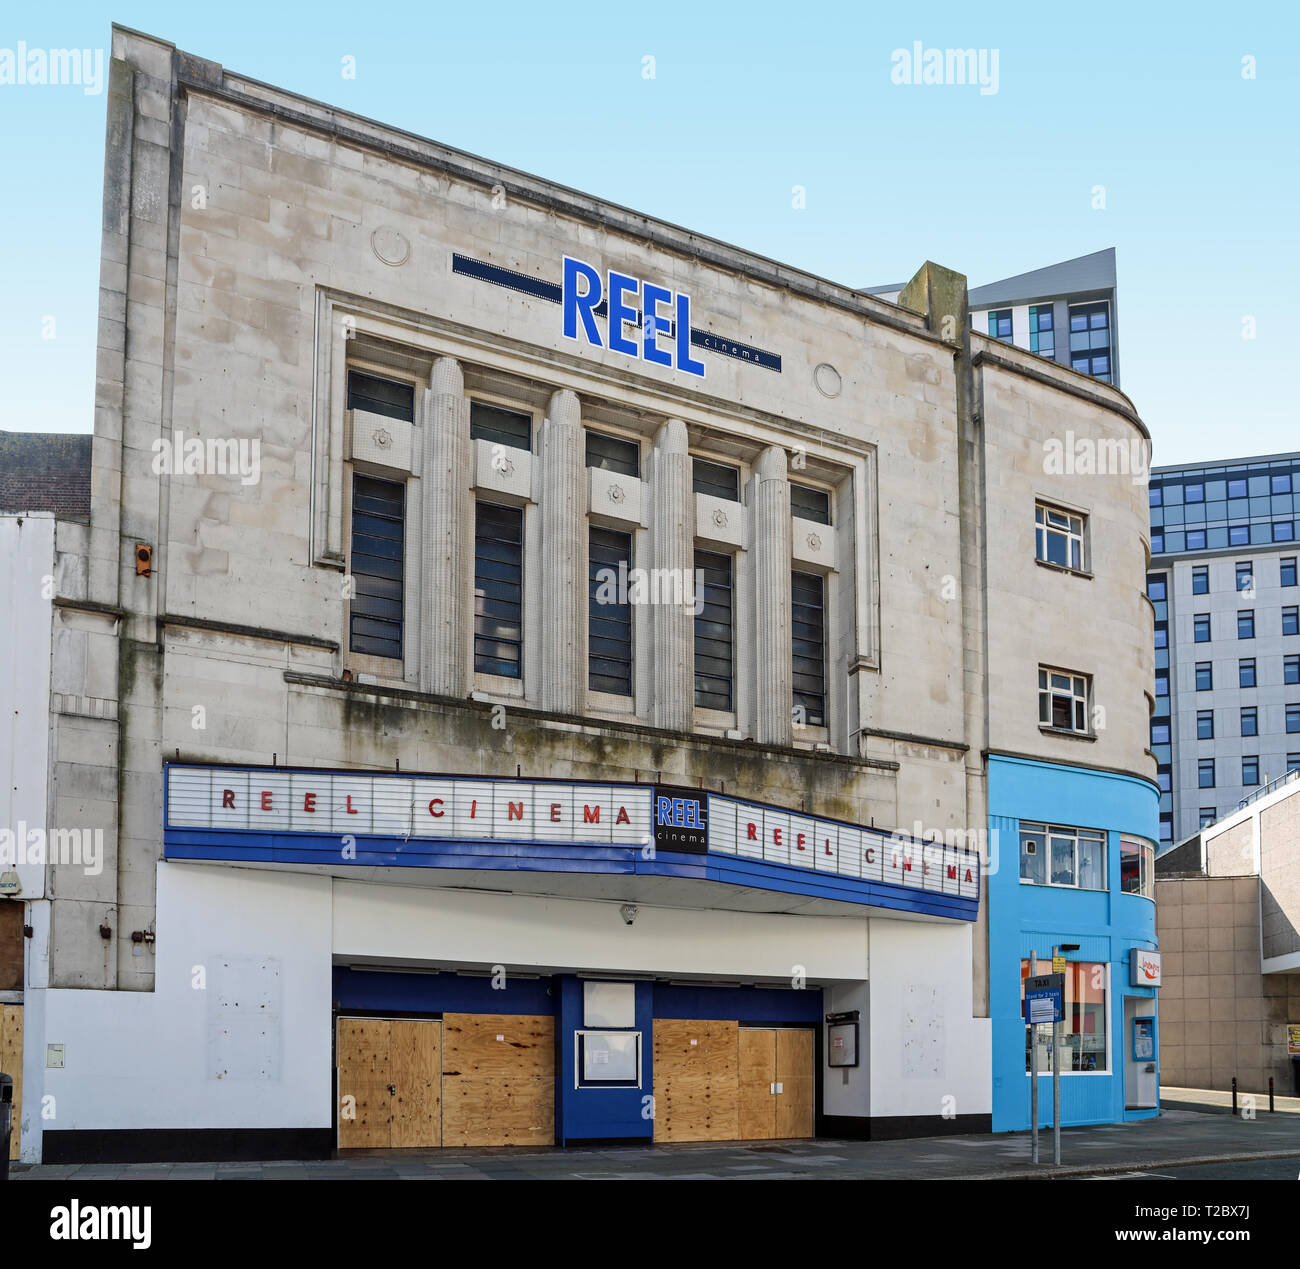 Reel Cinema, früher ABC Cinema, Royal Cinema, Canon Cinema. Kino und Konzerthalle. Royal Cinema Trust hat Pläne, es wieder zum Leben zu erwecken Stockfoto